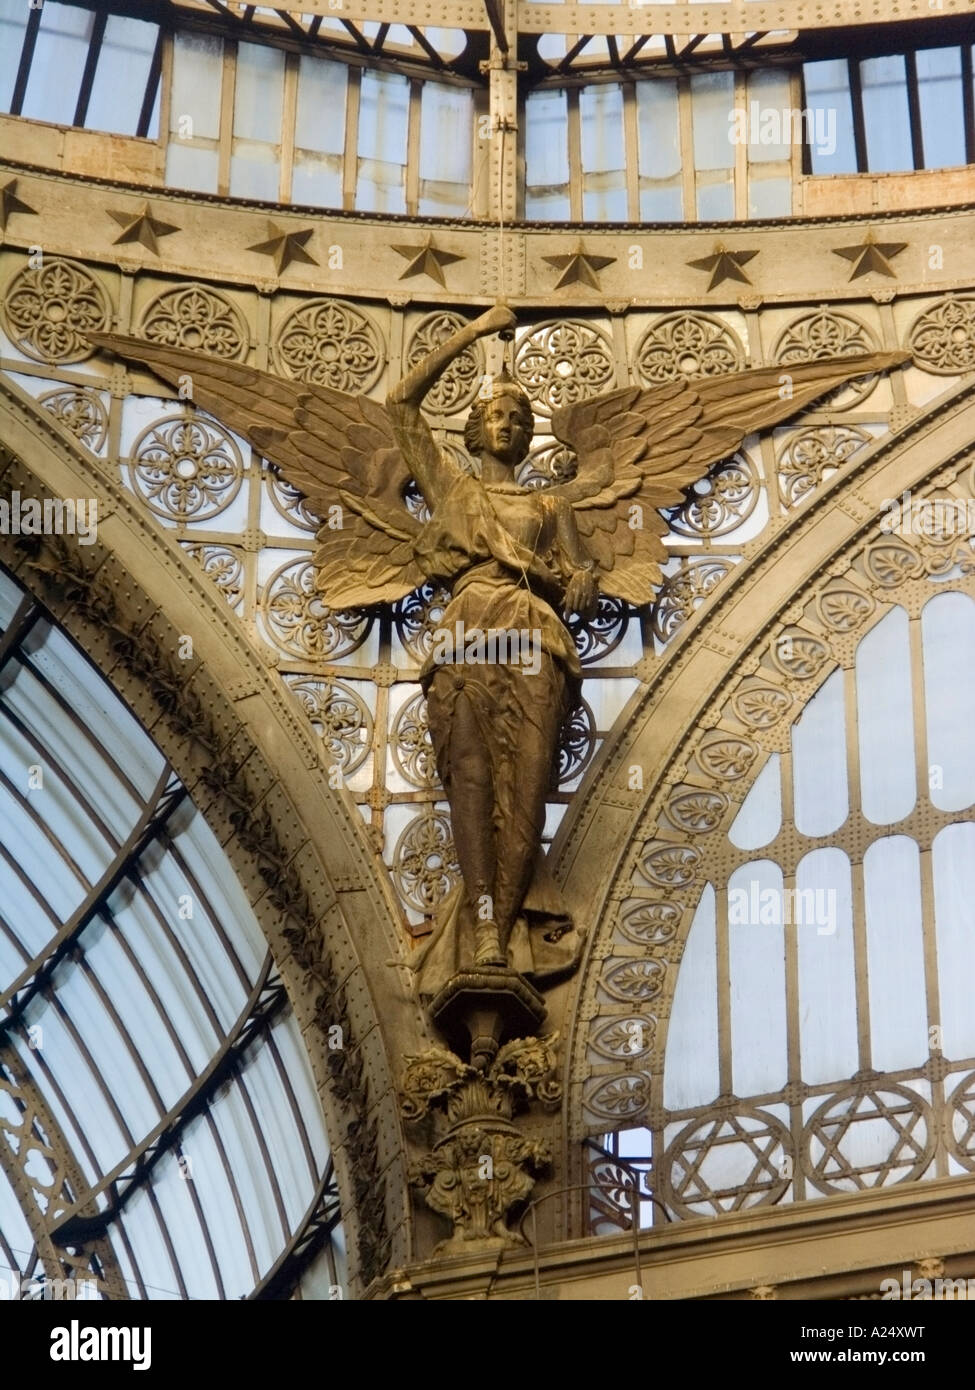 Un ange metal sculpture décoration dans la galerie Umberto, XIX sec, Naples, au sud de l'Italie, de l'UNION EUROPÉENNE Banque D'Images